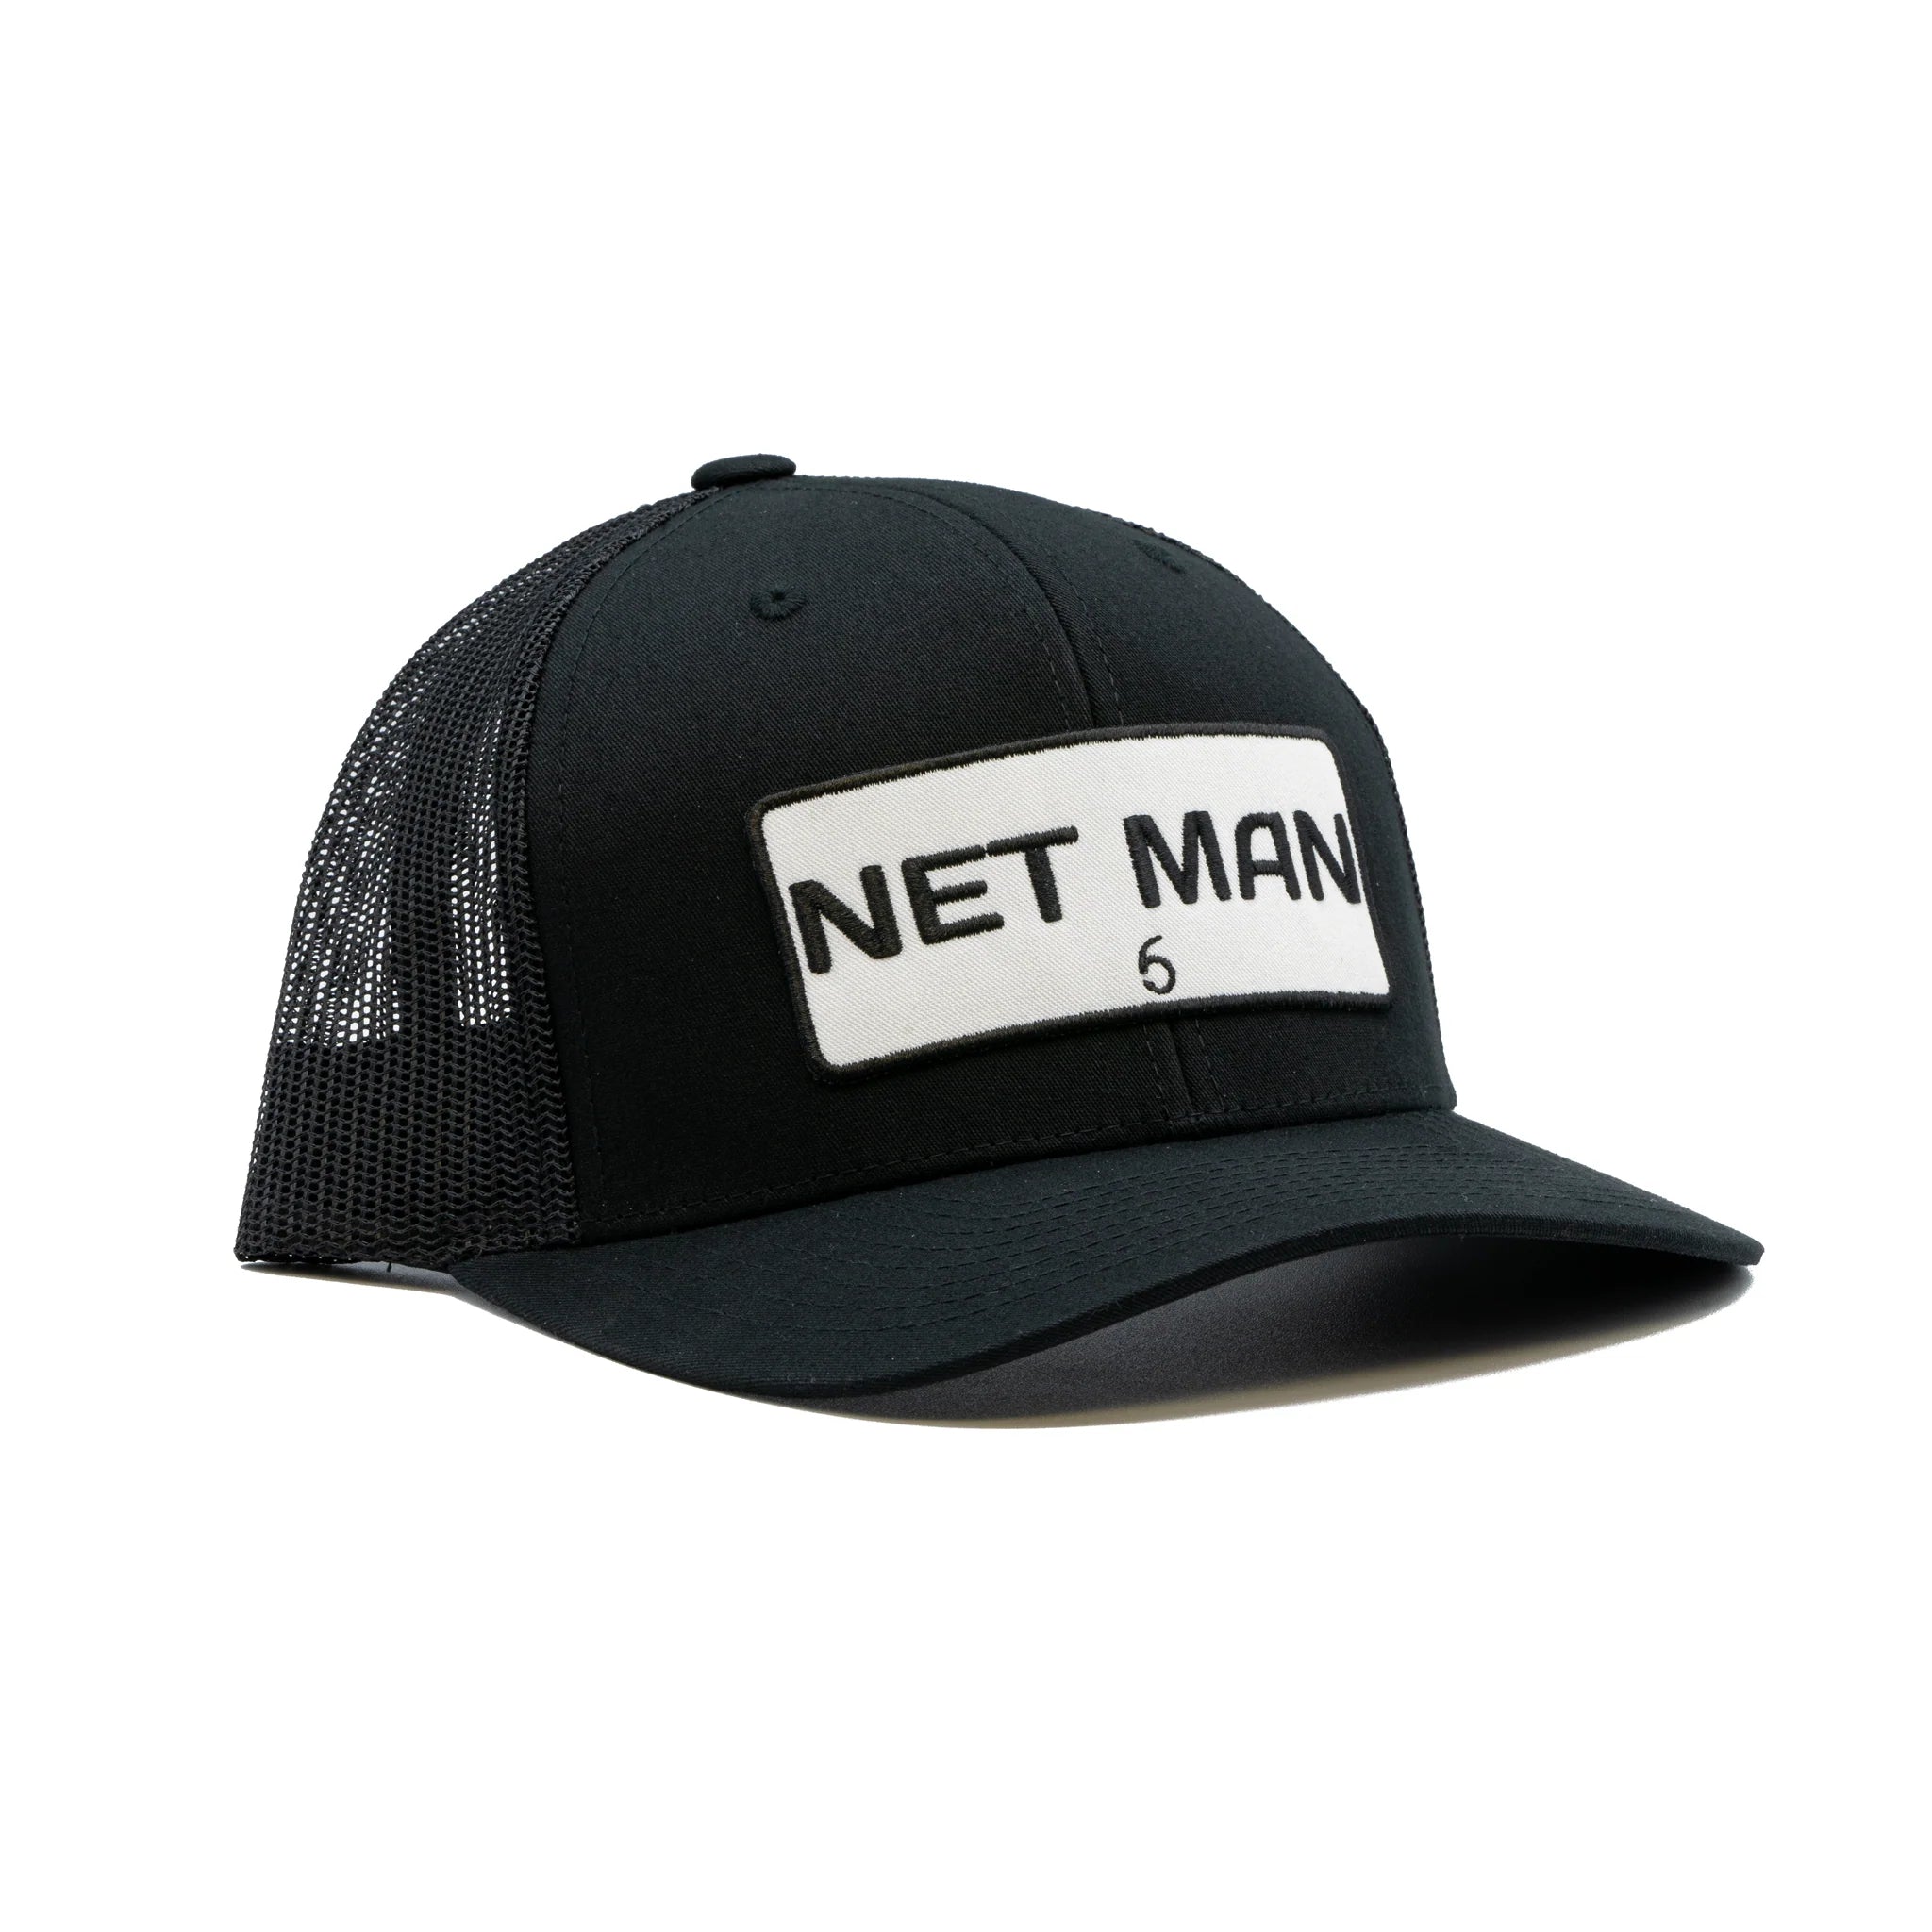 Buy net-man-black 6TH SENSE HATS